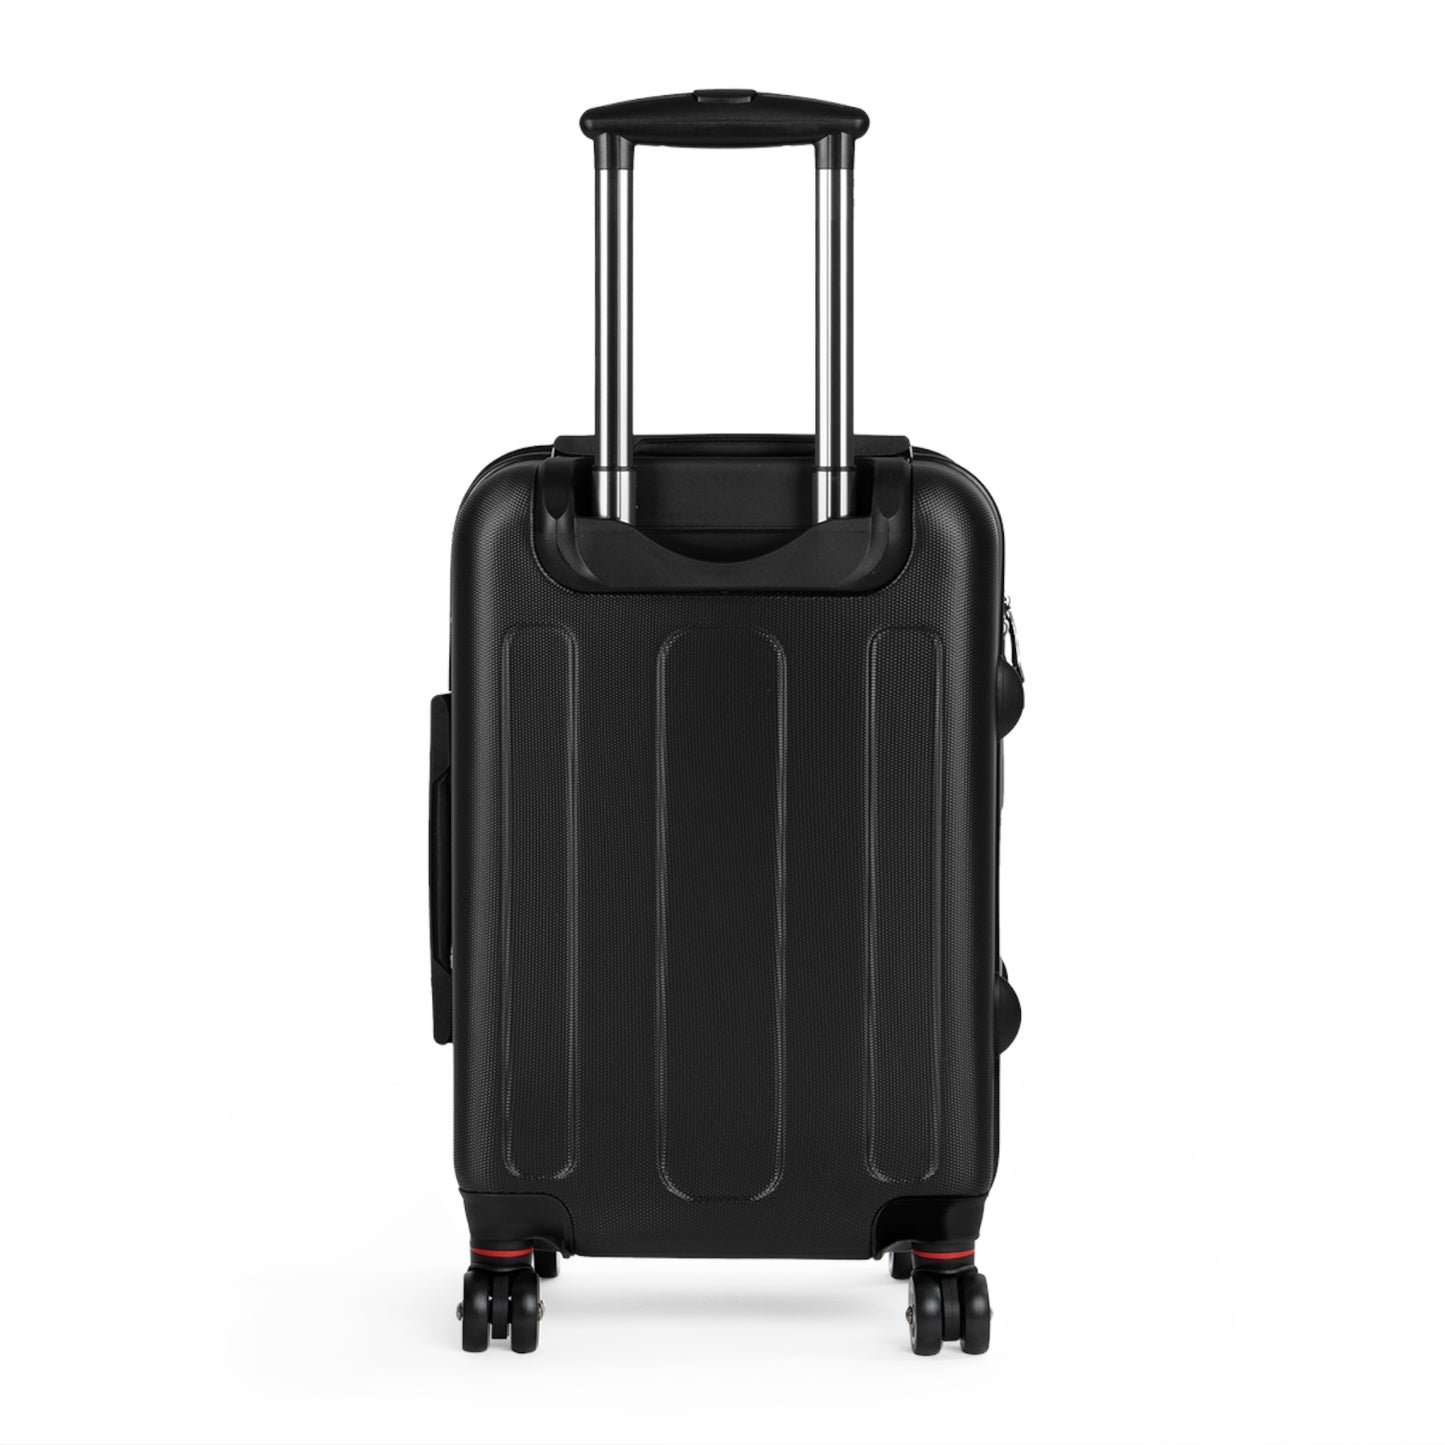 M-TECH (675s) Suitcase